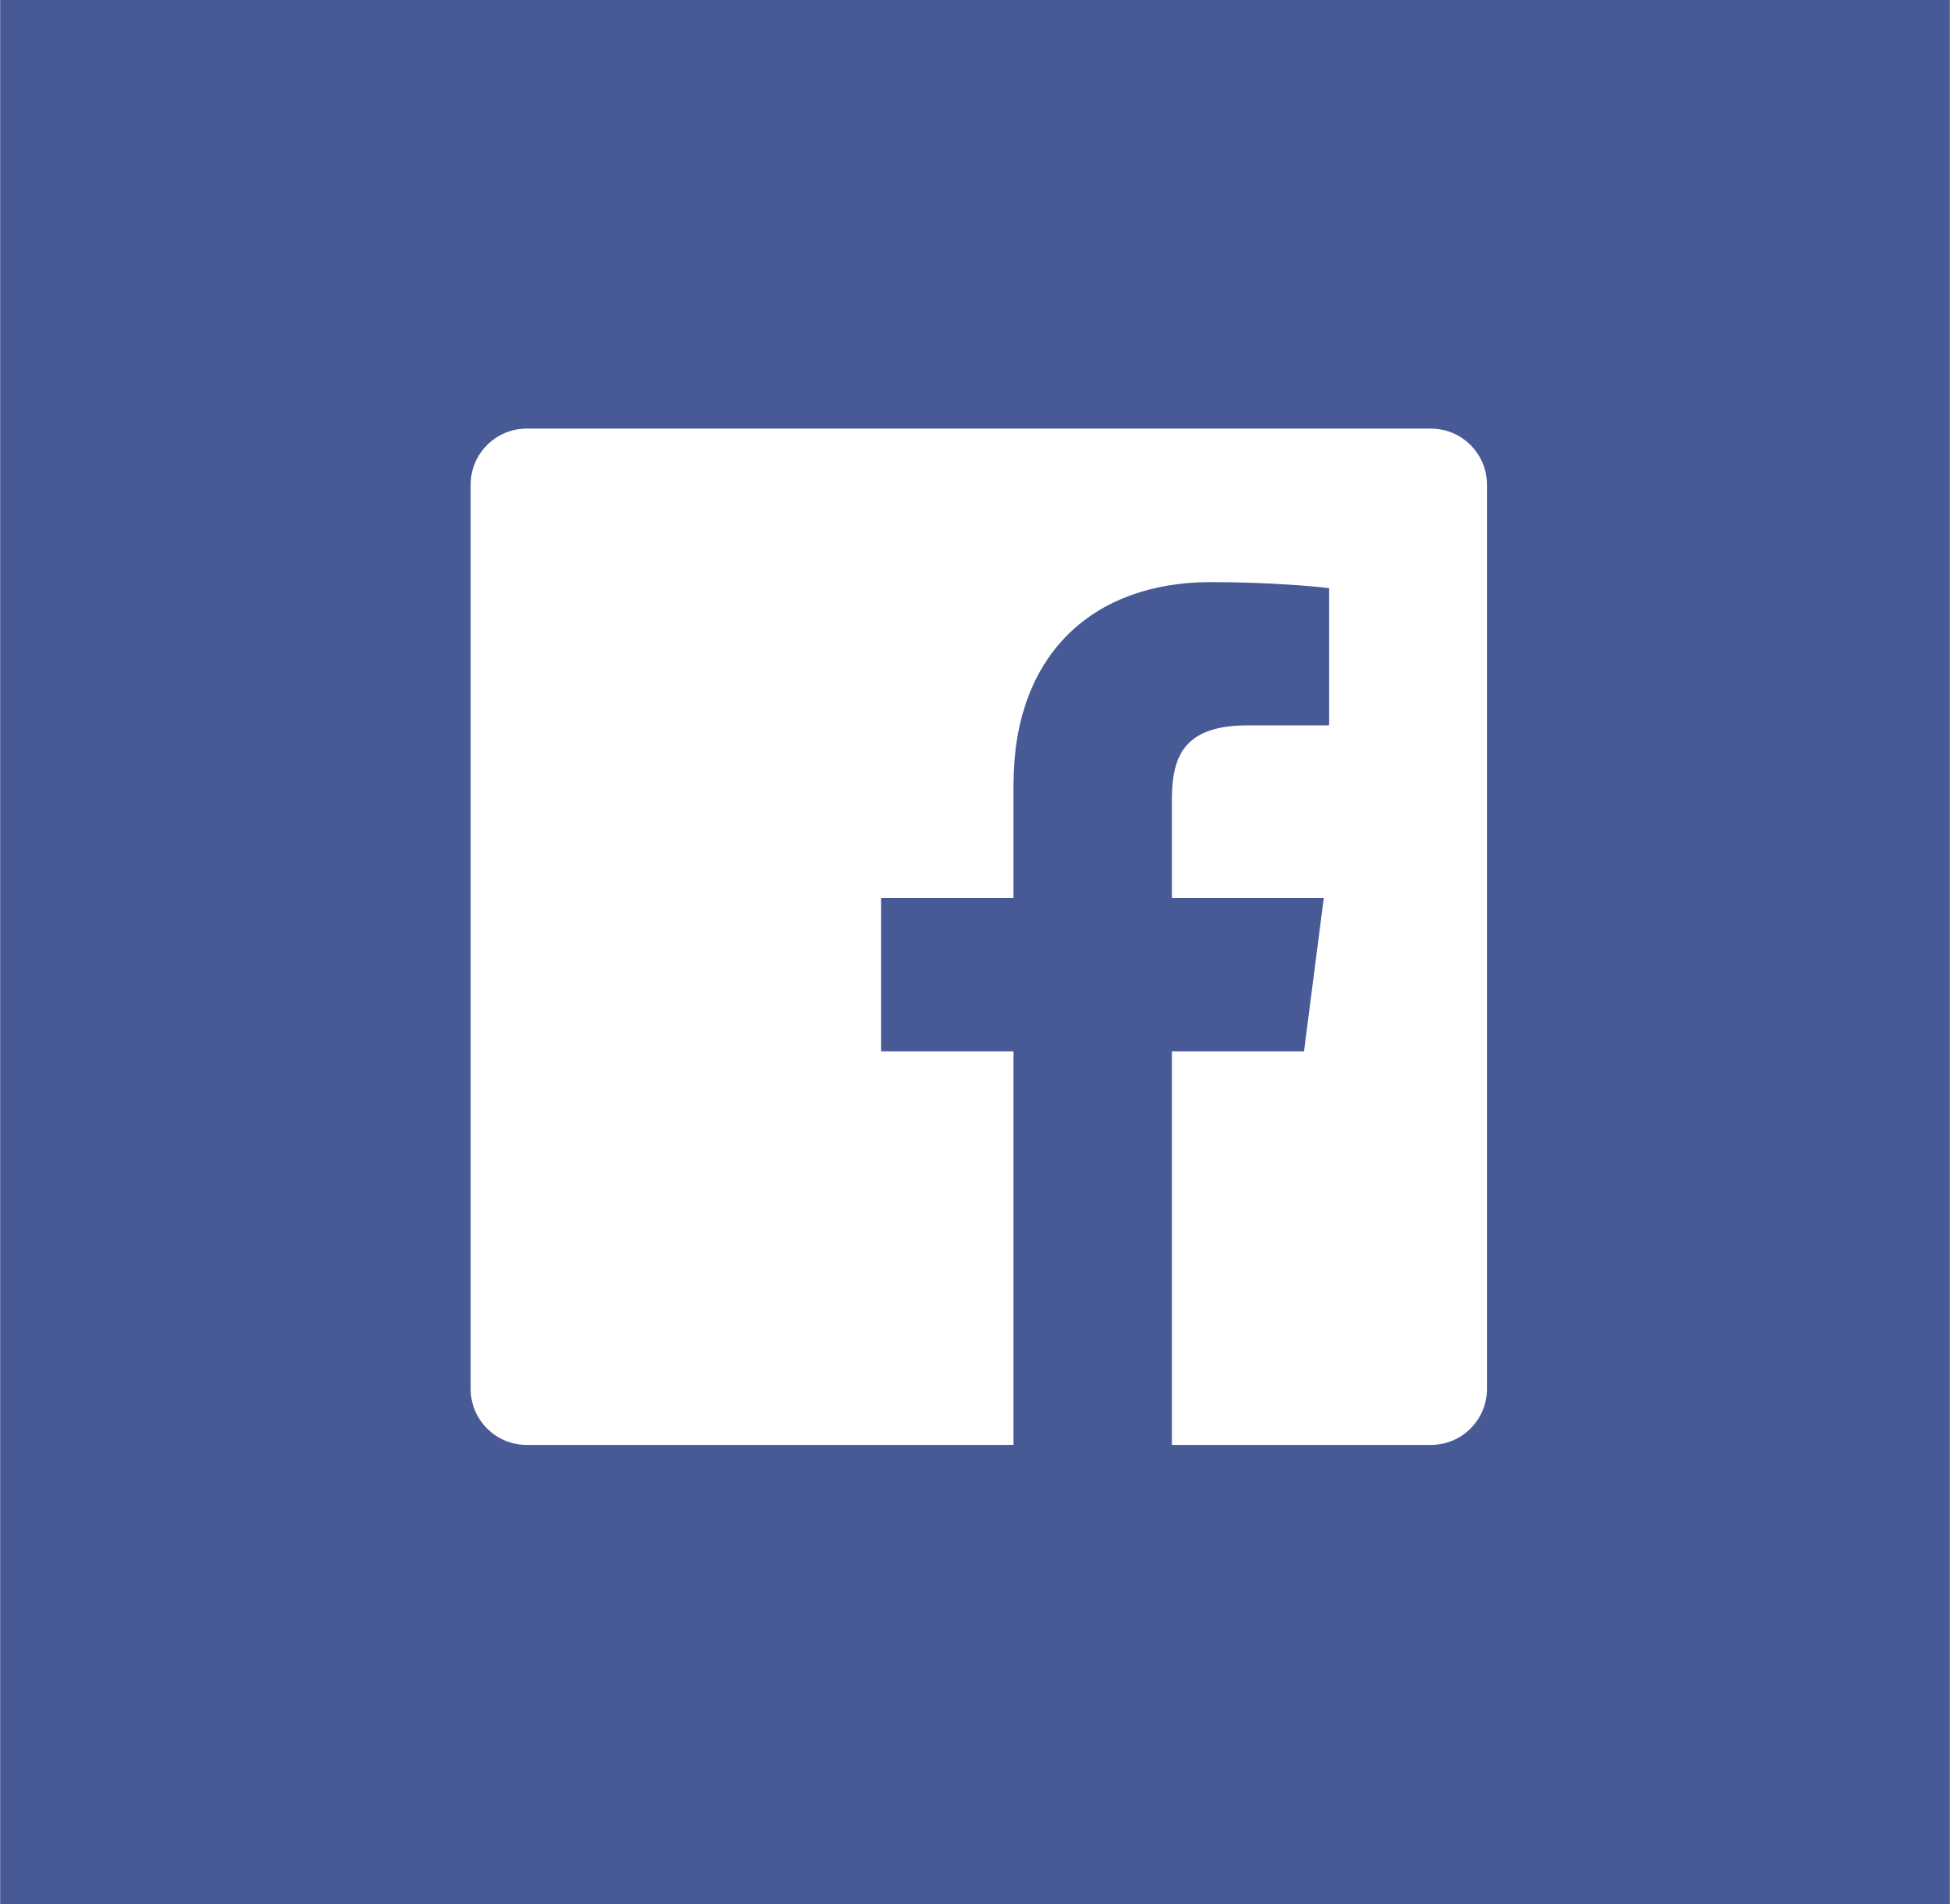 White Facebook Logo - Facebook icon white Logo PNG Transparent & SVG Vector